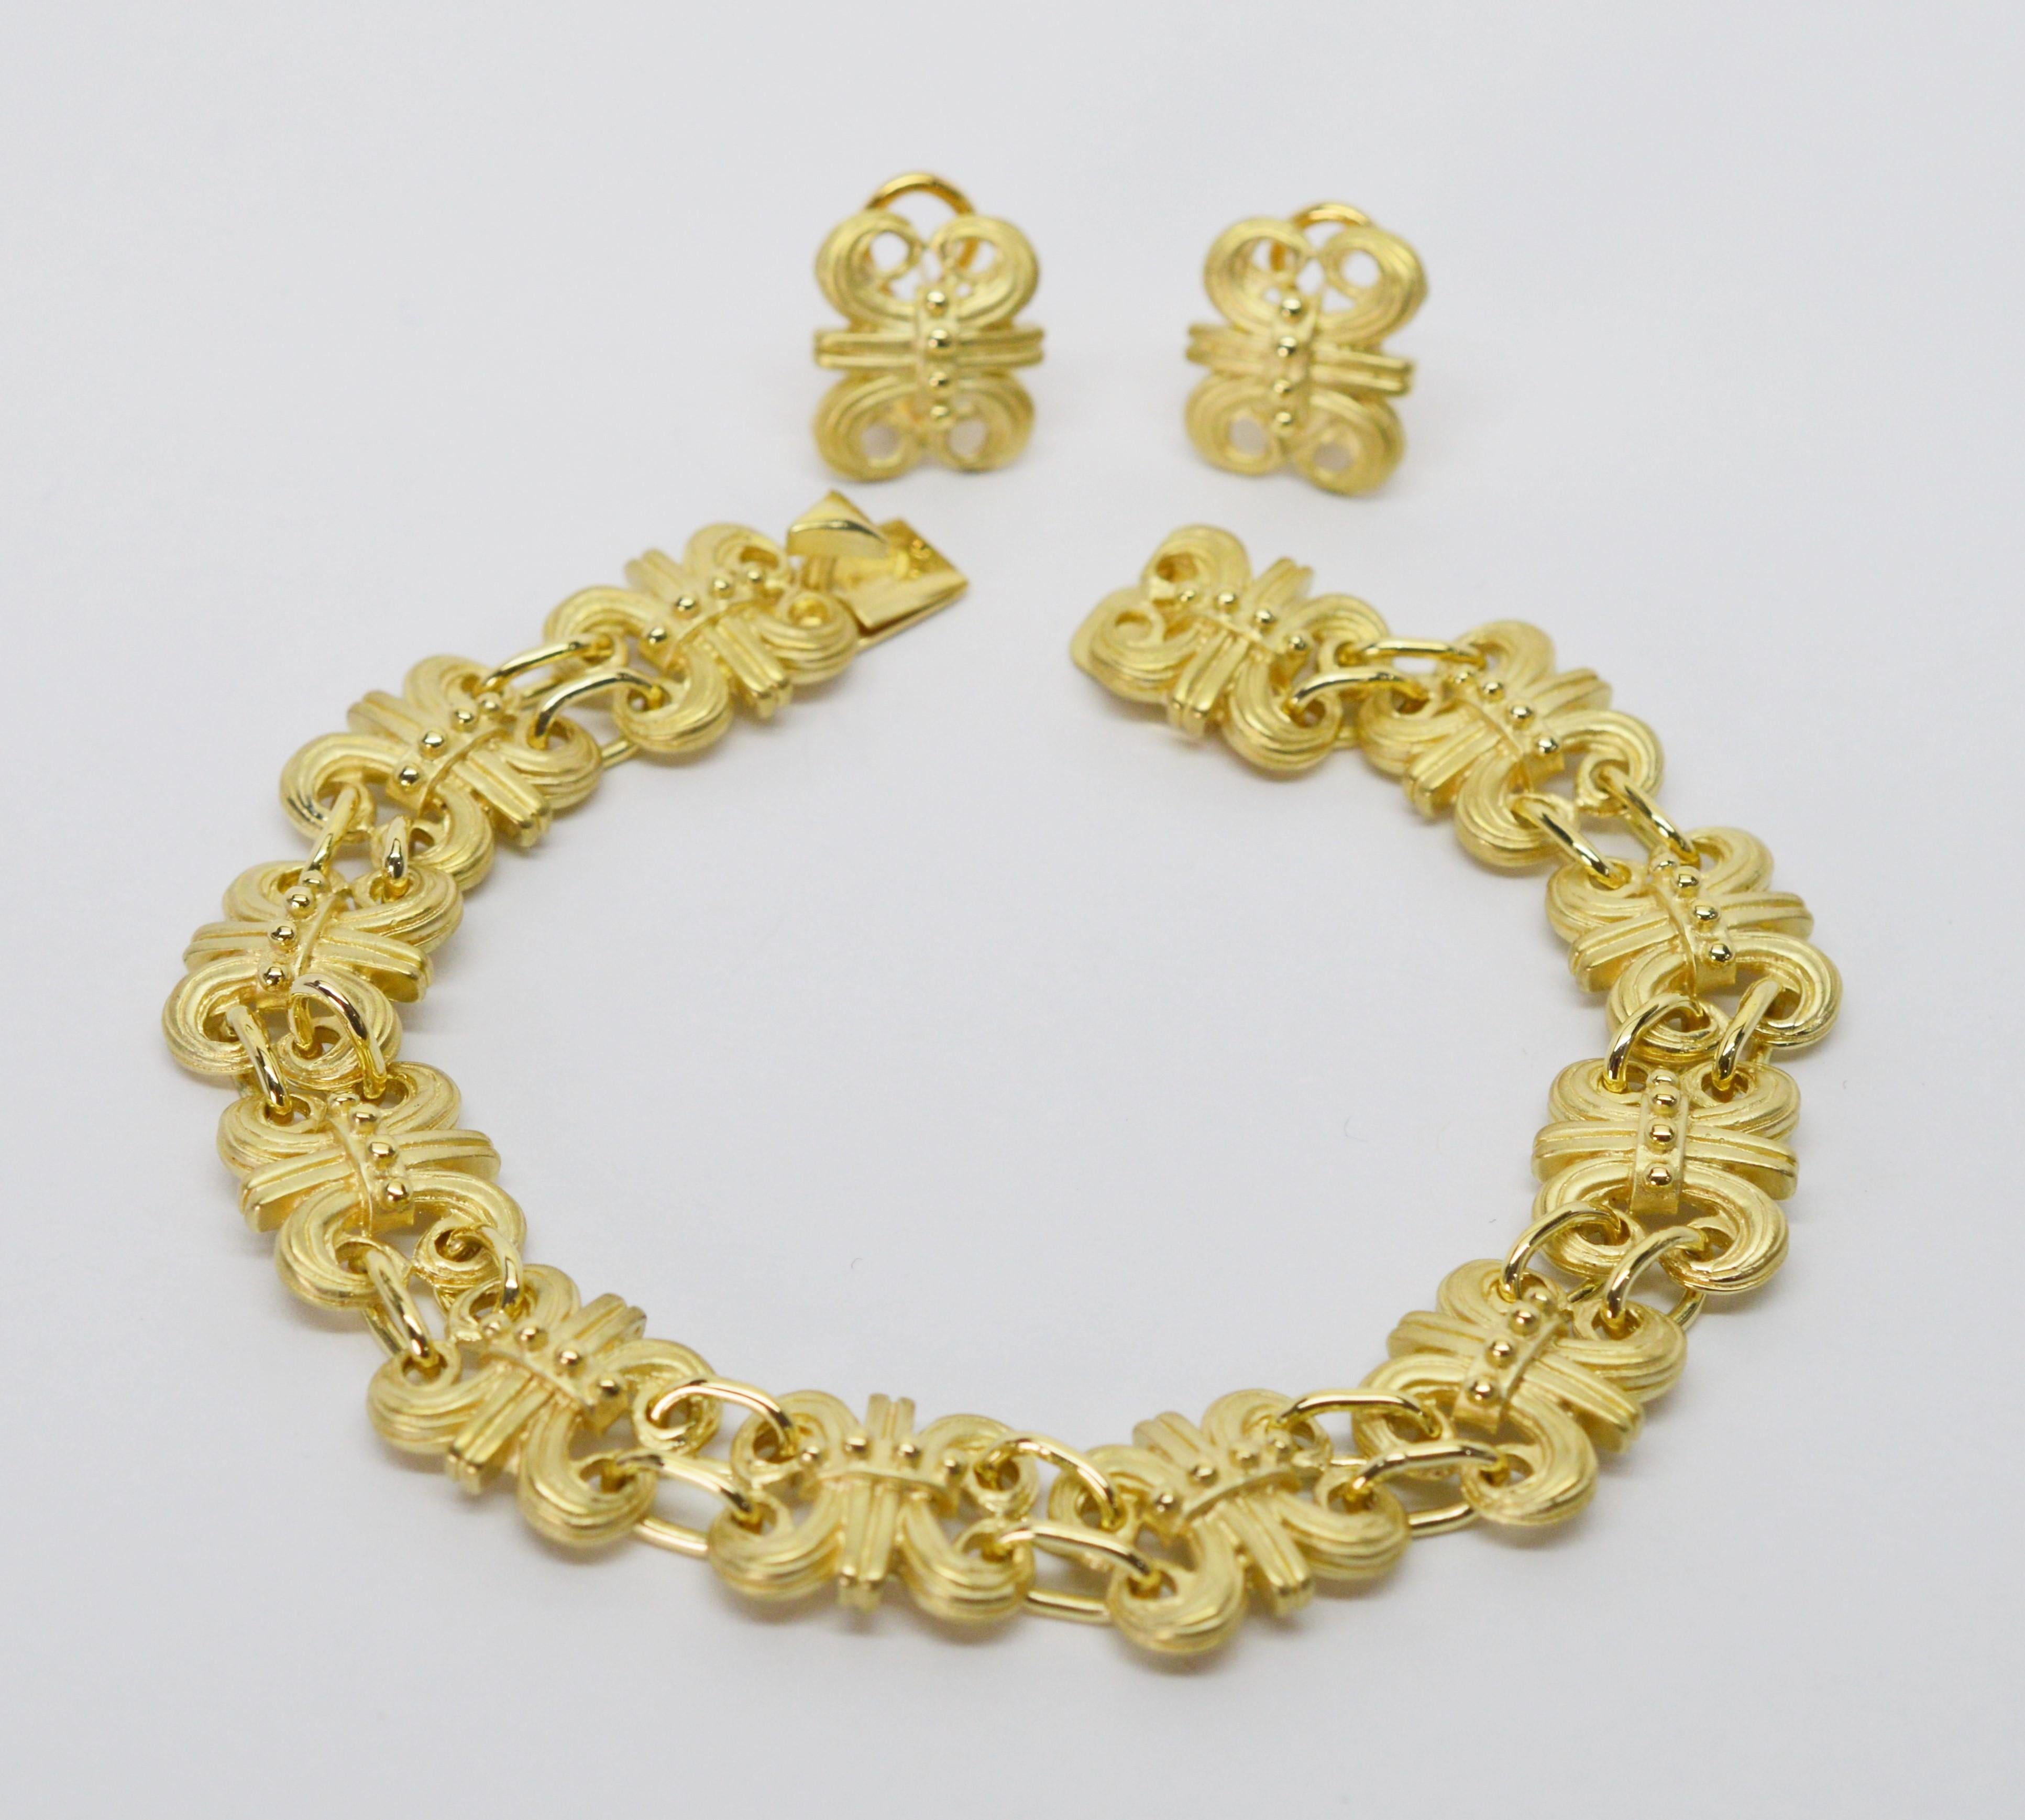 gold bracelet and earring set